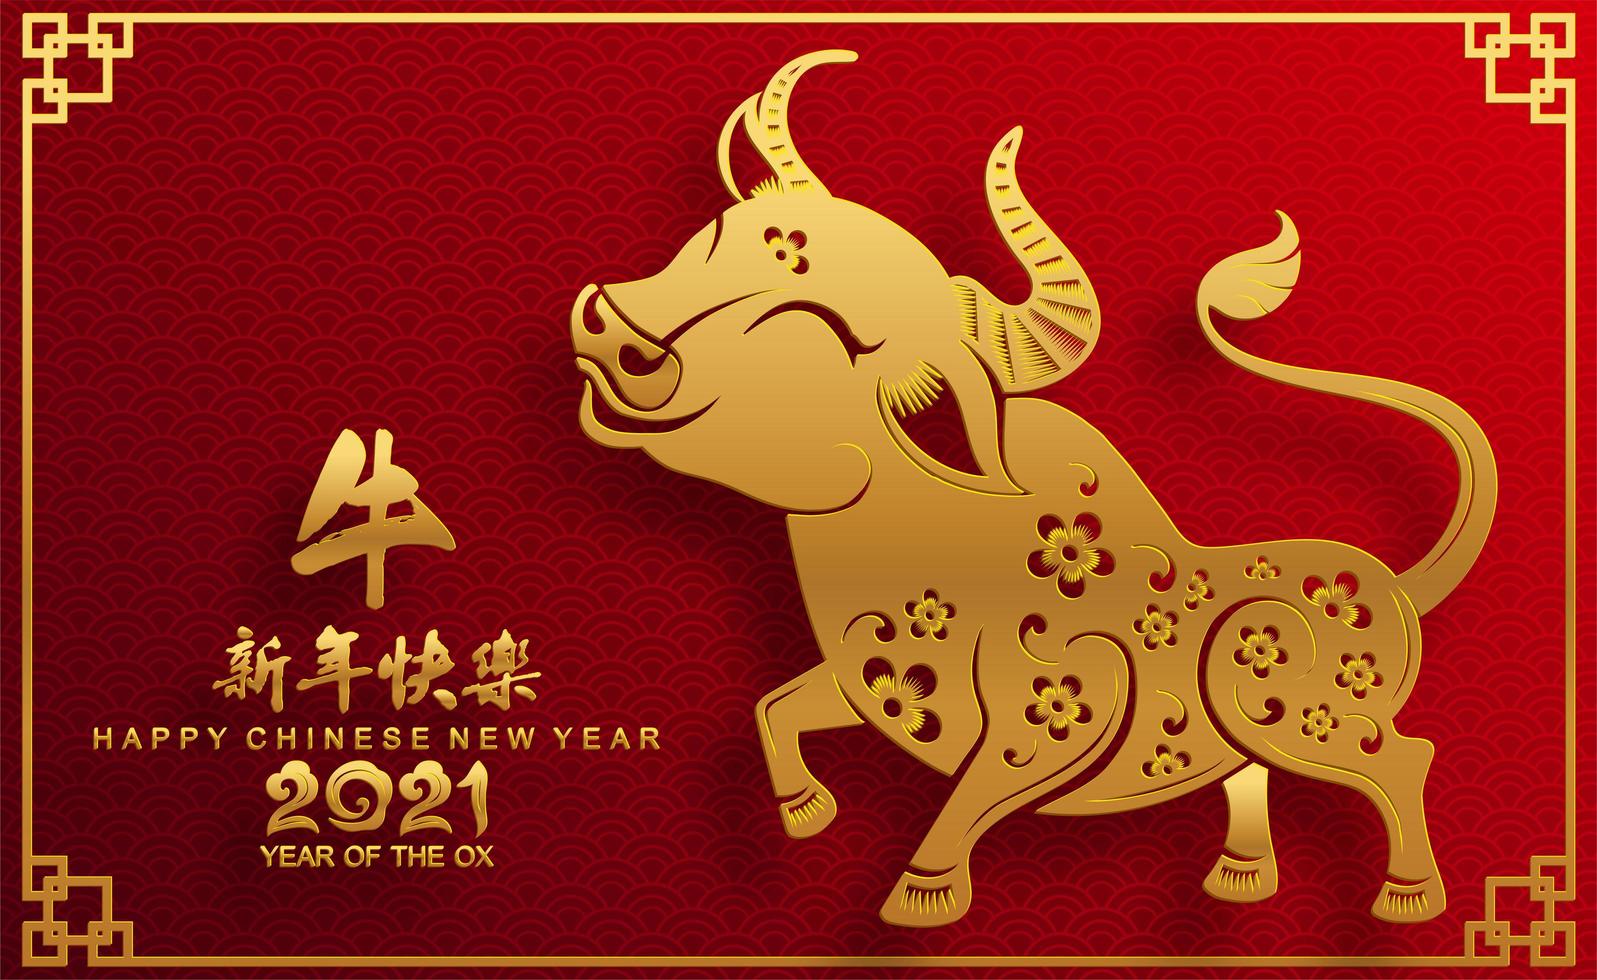 diseño del año nuevo chino 2021 con buey dorado vector